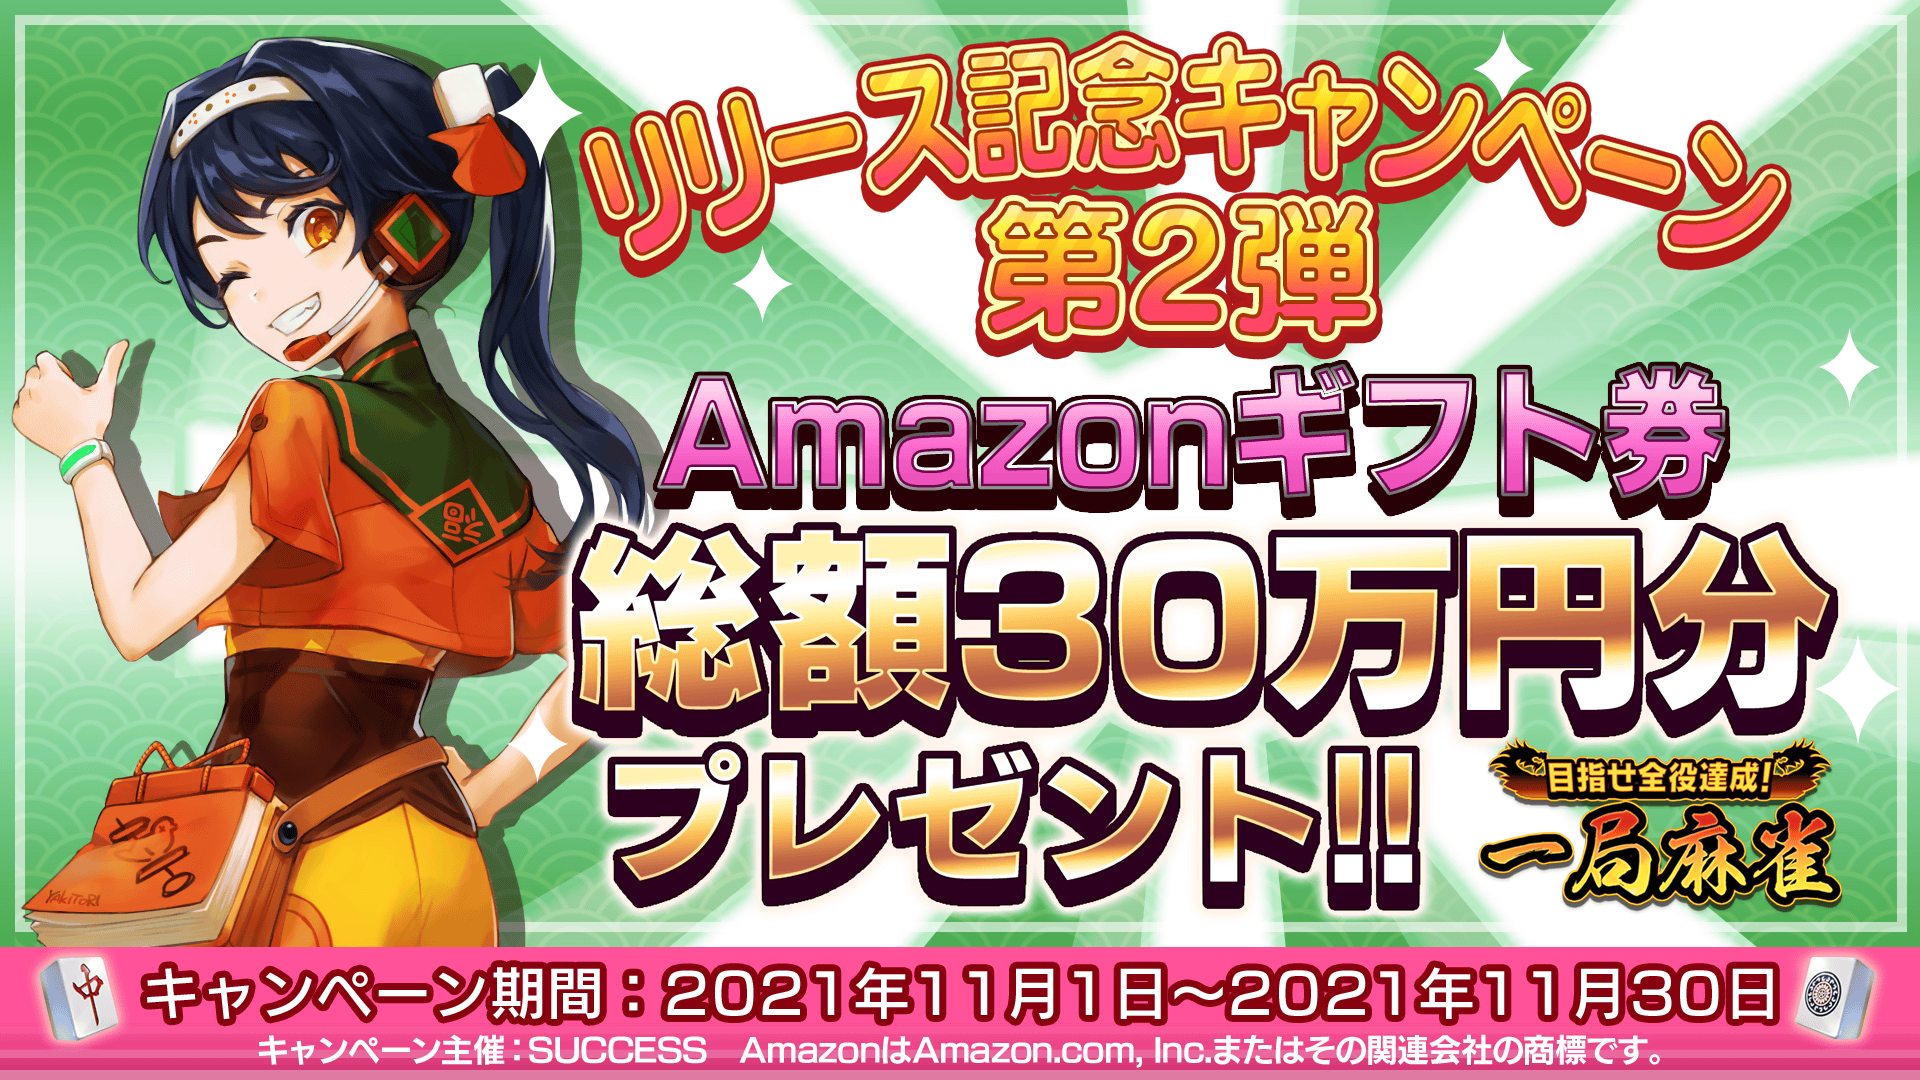 リリース記念キャンペーン第2弾 Amazonギフト券 総額30万円分プレゼント!!